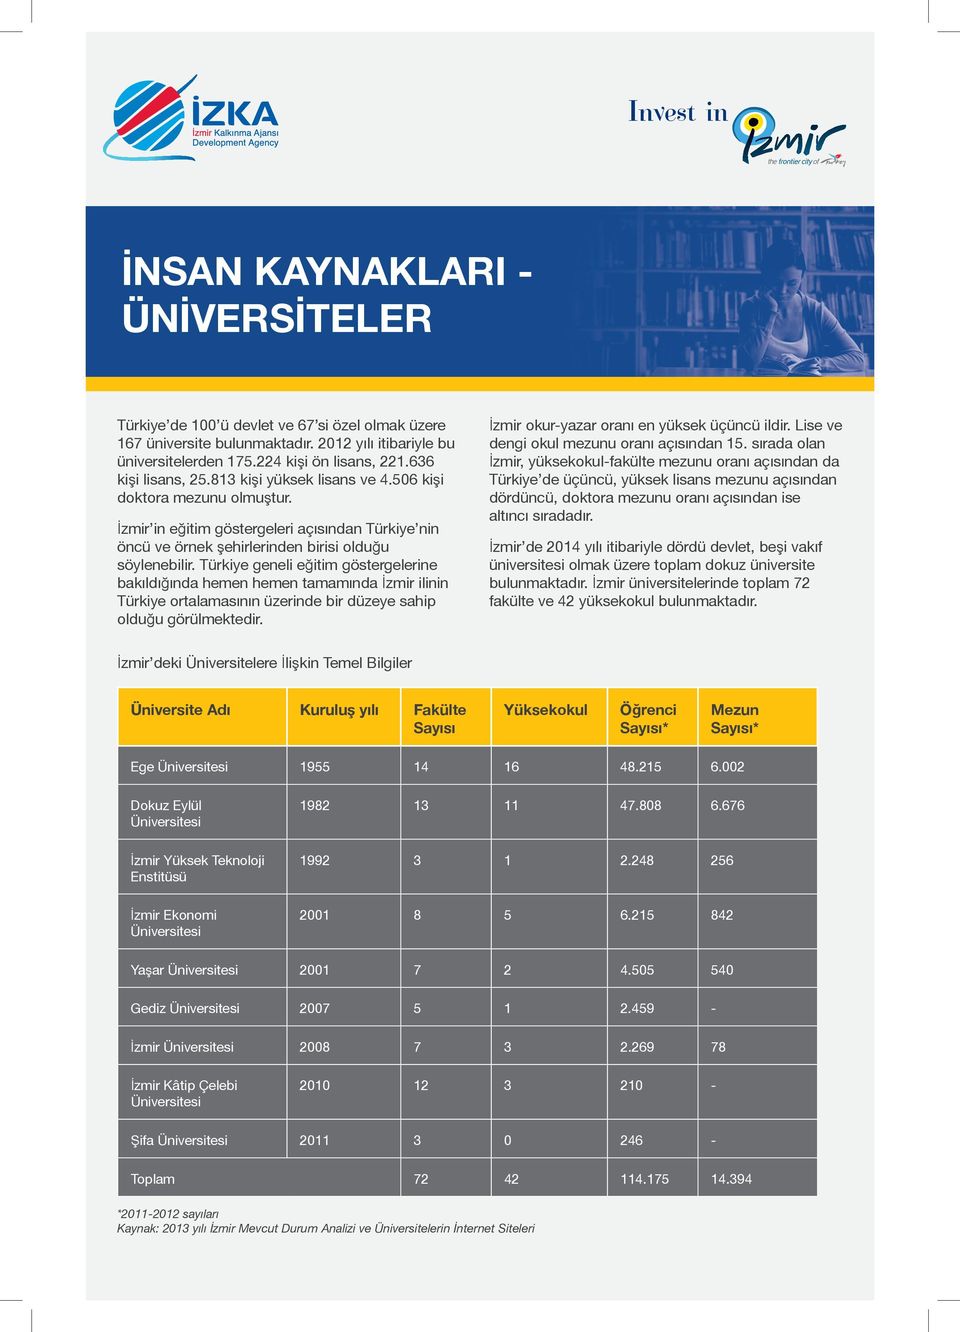 Türkiye geneli eğitim göstergelerine bakıldığında hemen hemen tamamında İzmir ilinin Türkiye ortalamasının üzerinde bir düzeye sahip olduğu görülmektedir.